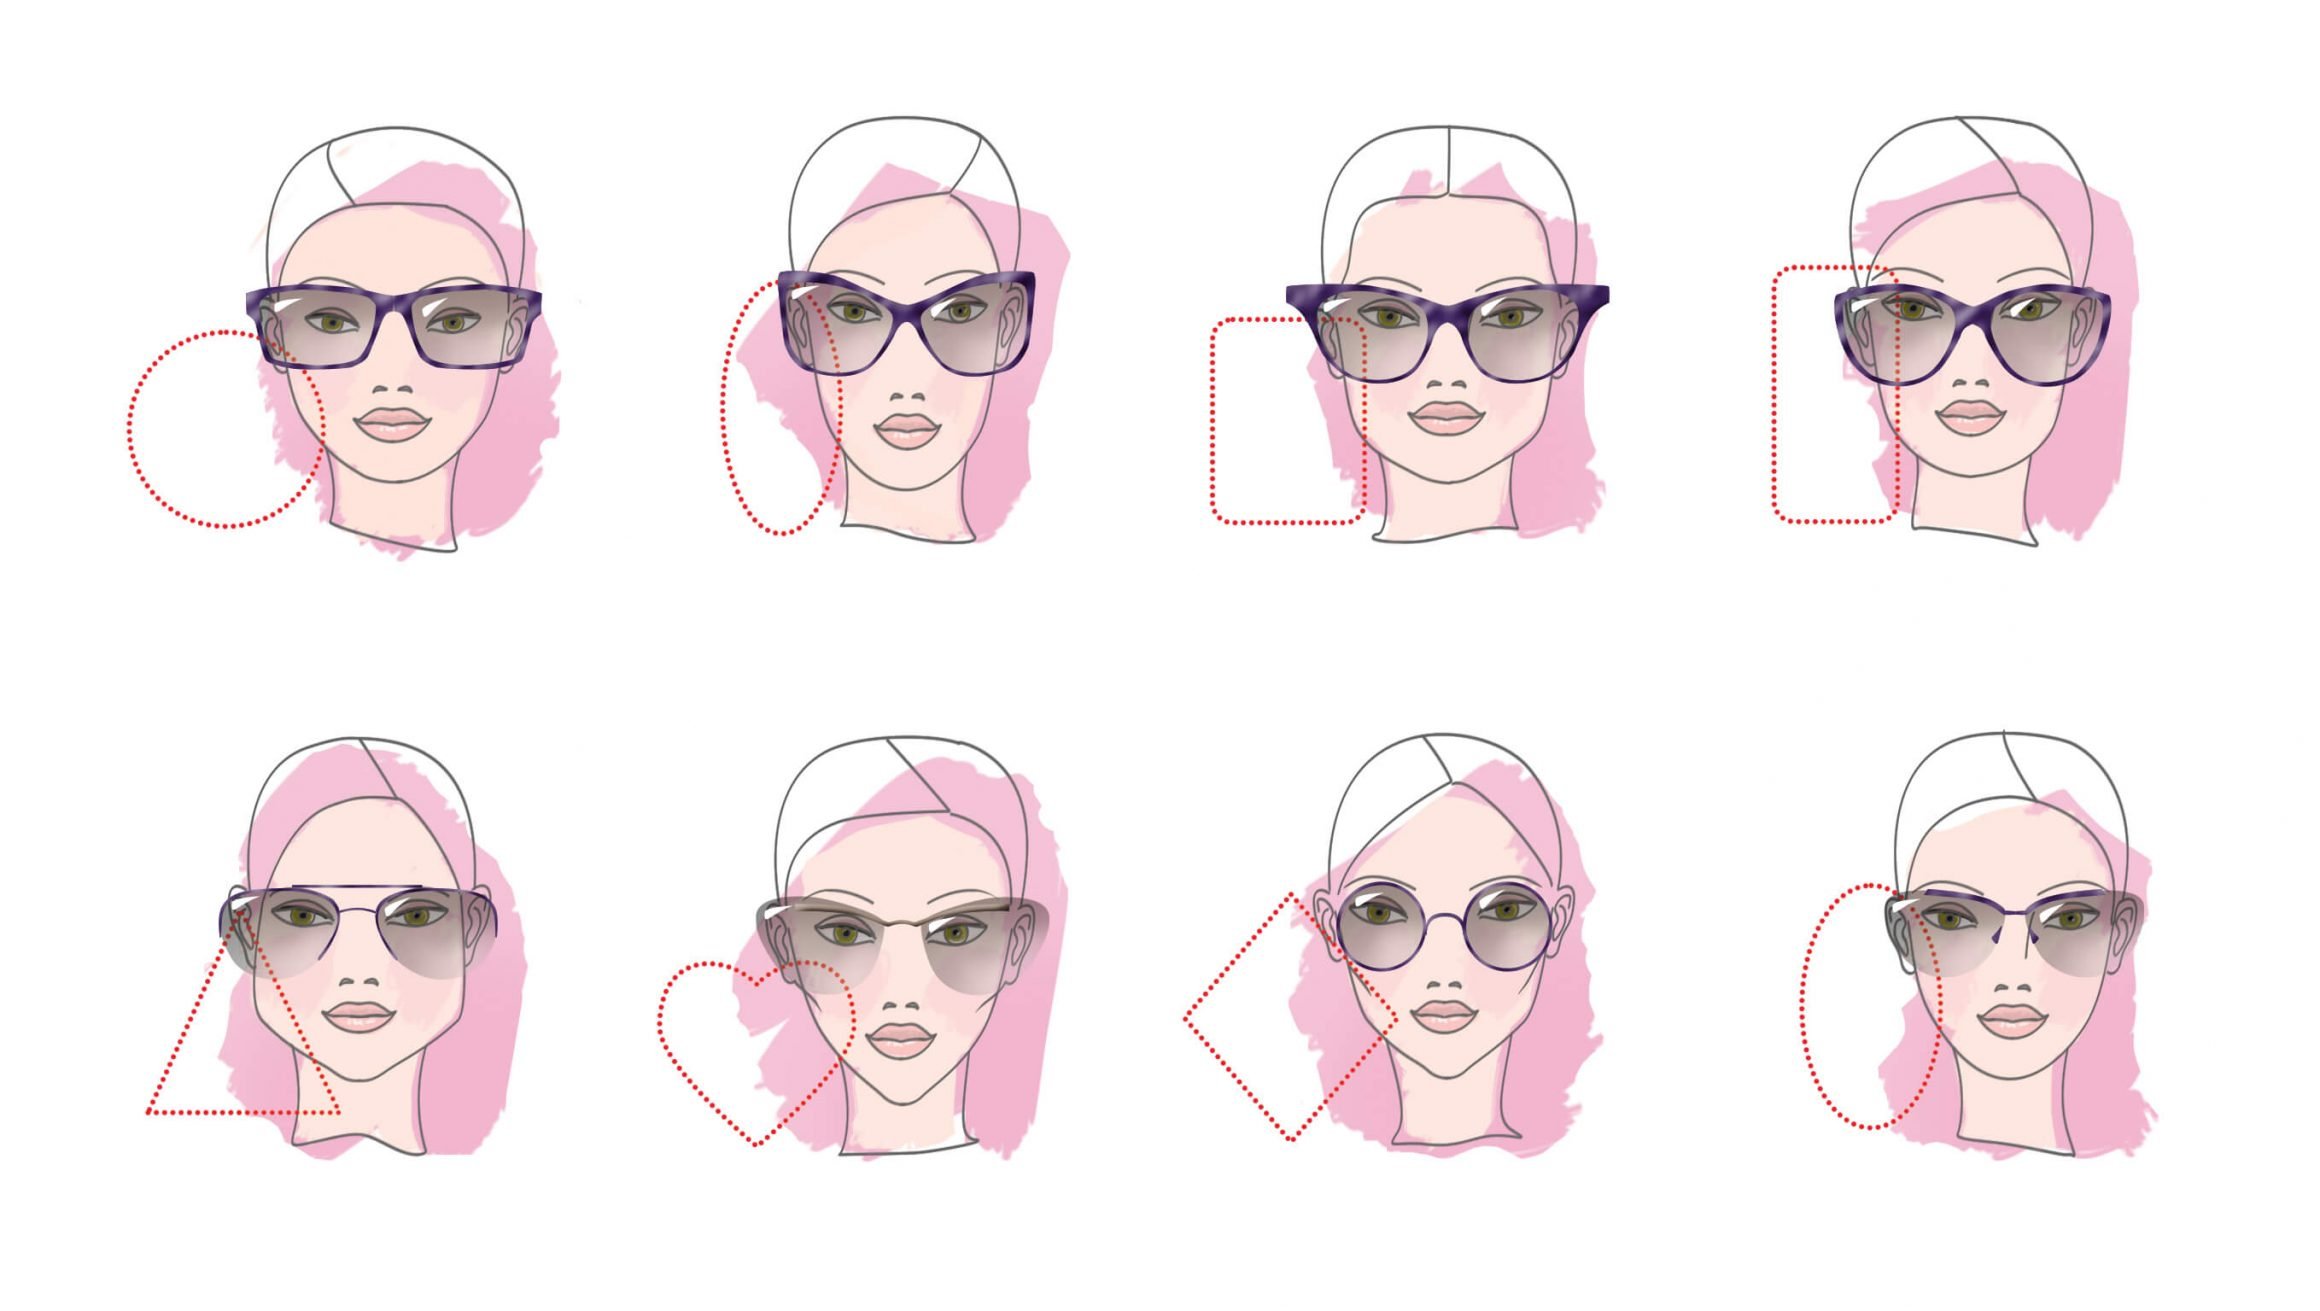 Как правильно выбрать очки по форме лица